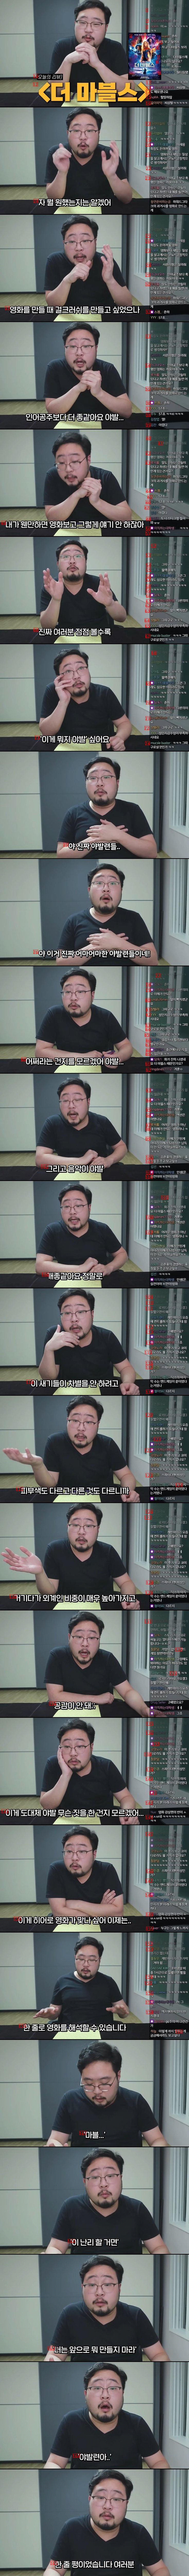 마블 신작 ''더 마블스'' 보고 왔다는 유튜버 근황 ㄷㄷㄷ..JPG